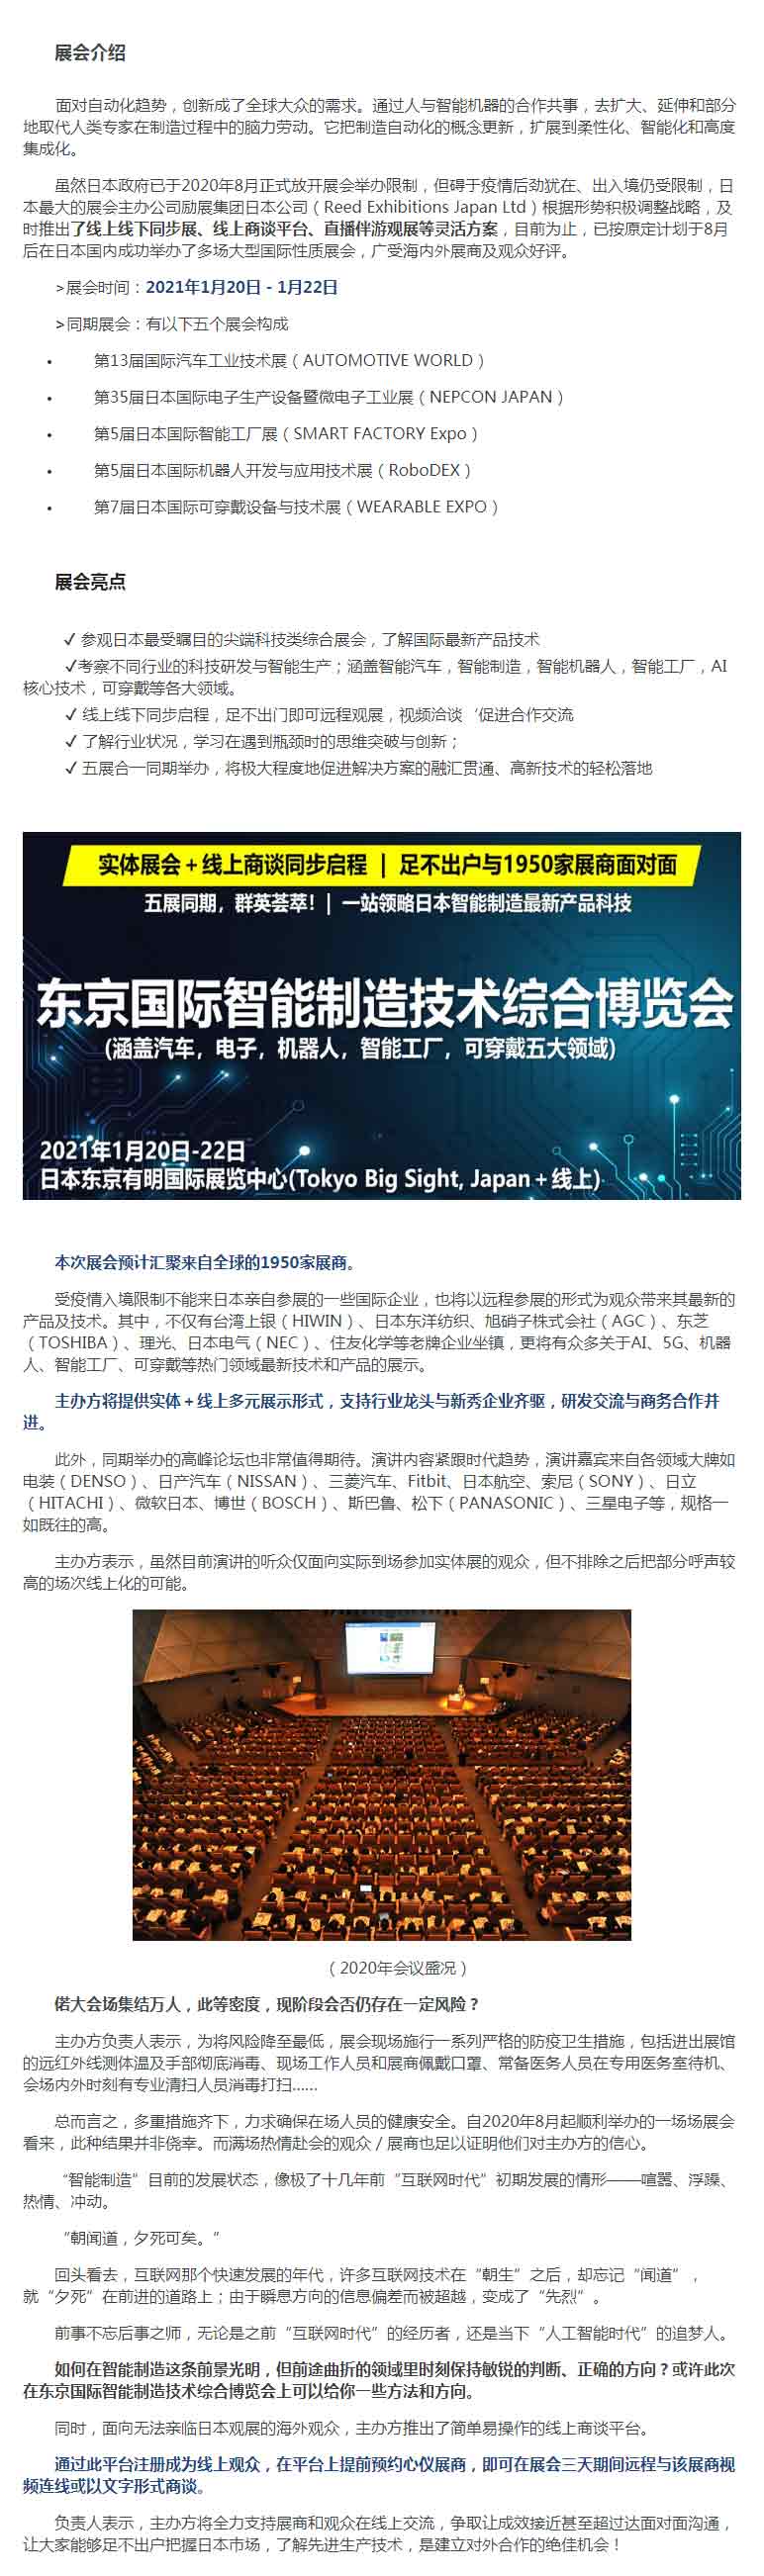 2021东京国际智能制造技术综合博览会（线下+线上）-预约报名-OFweek维科网活动-活动行.jpg